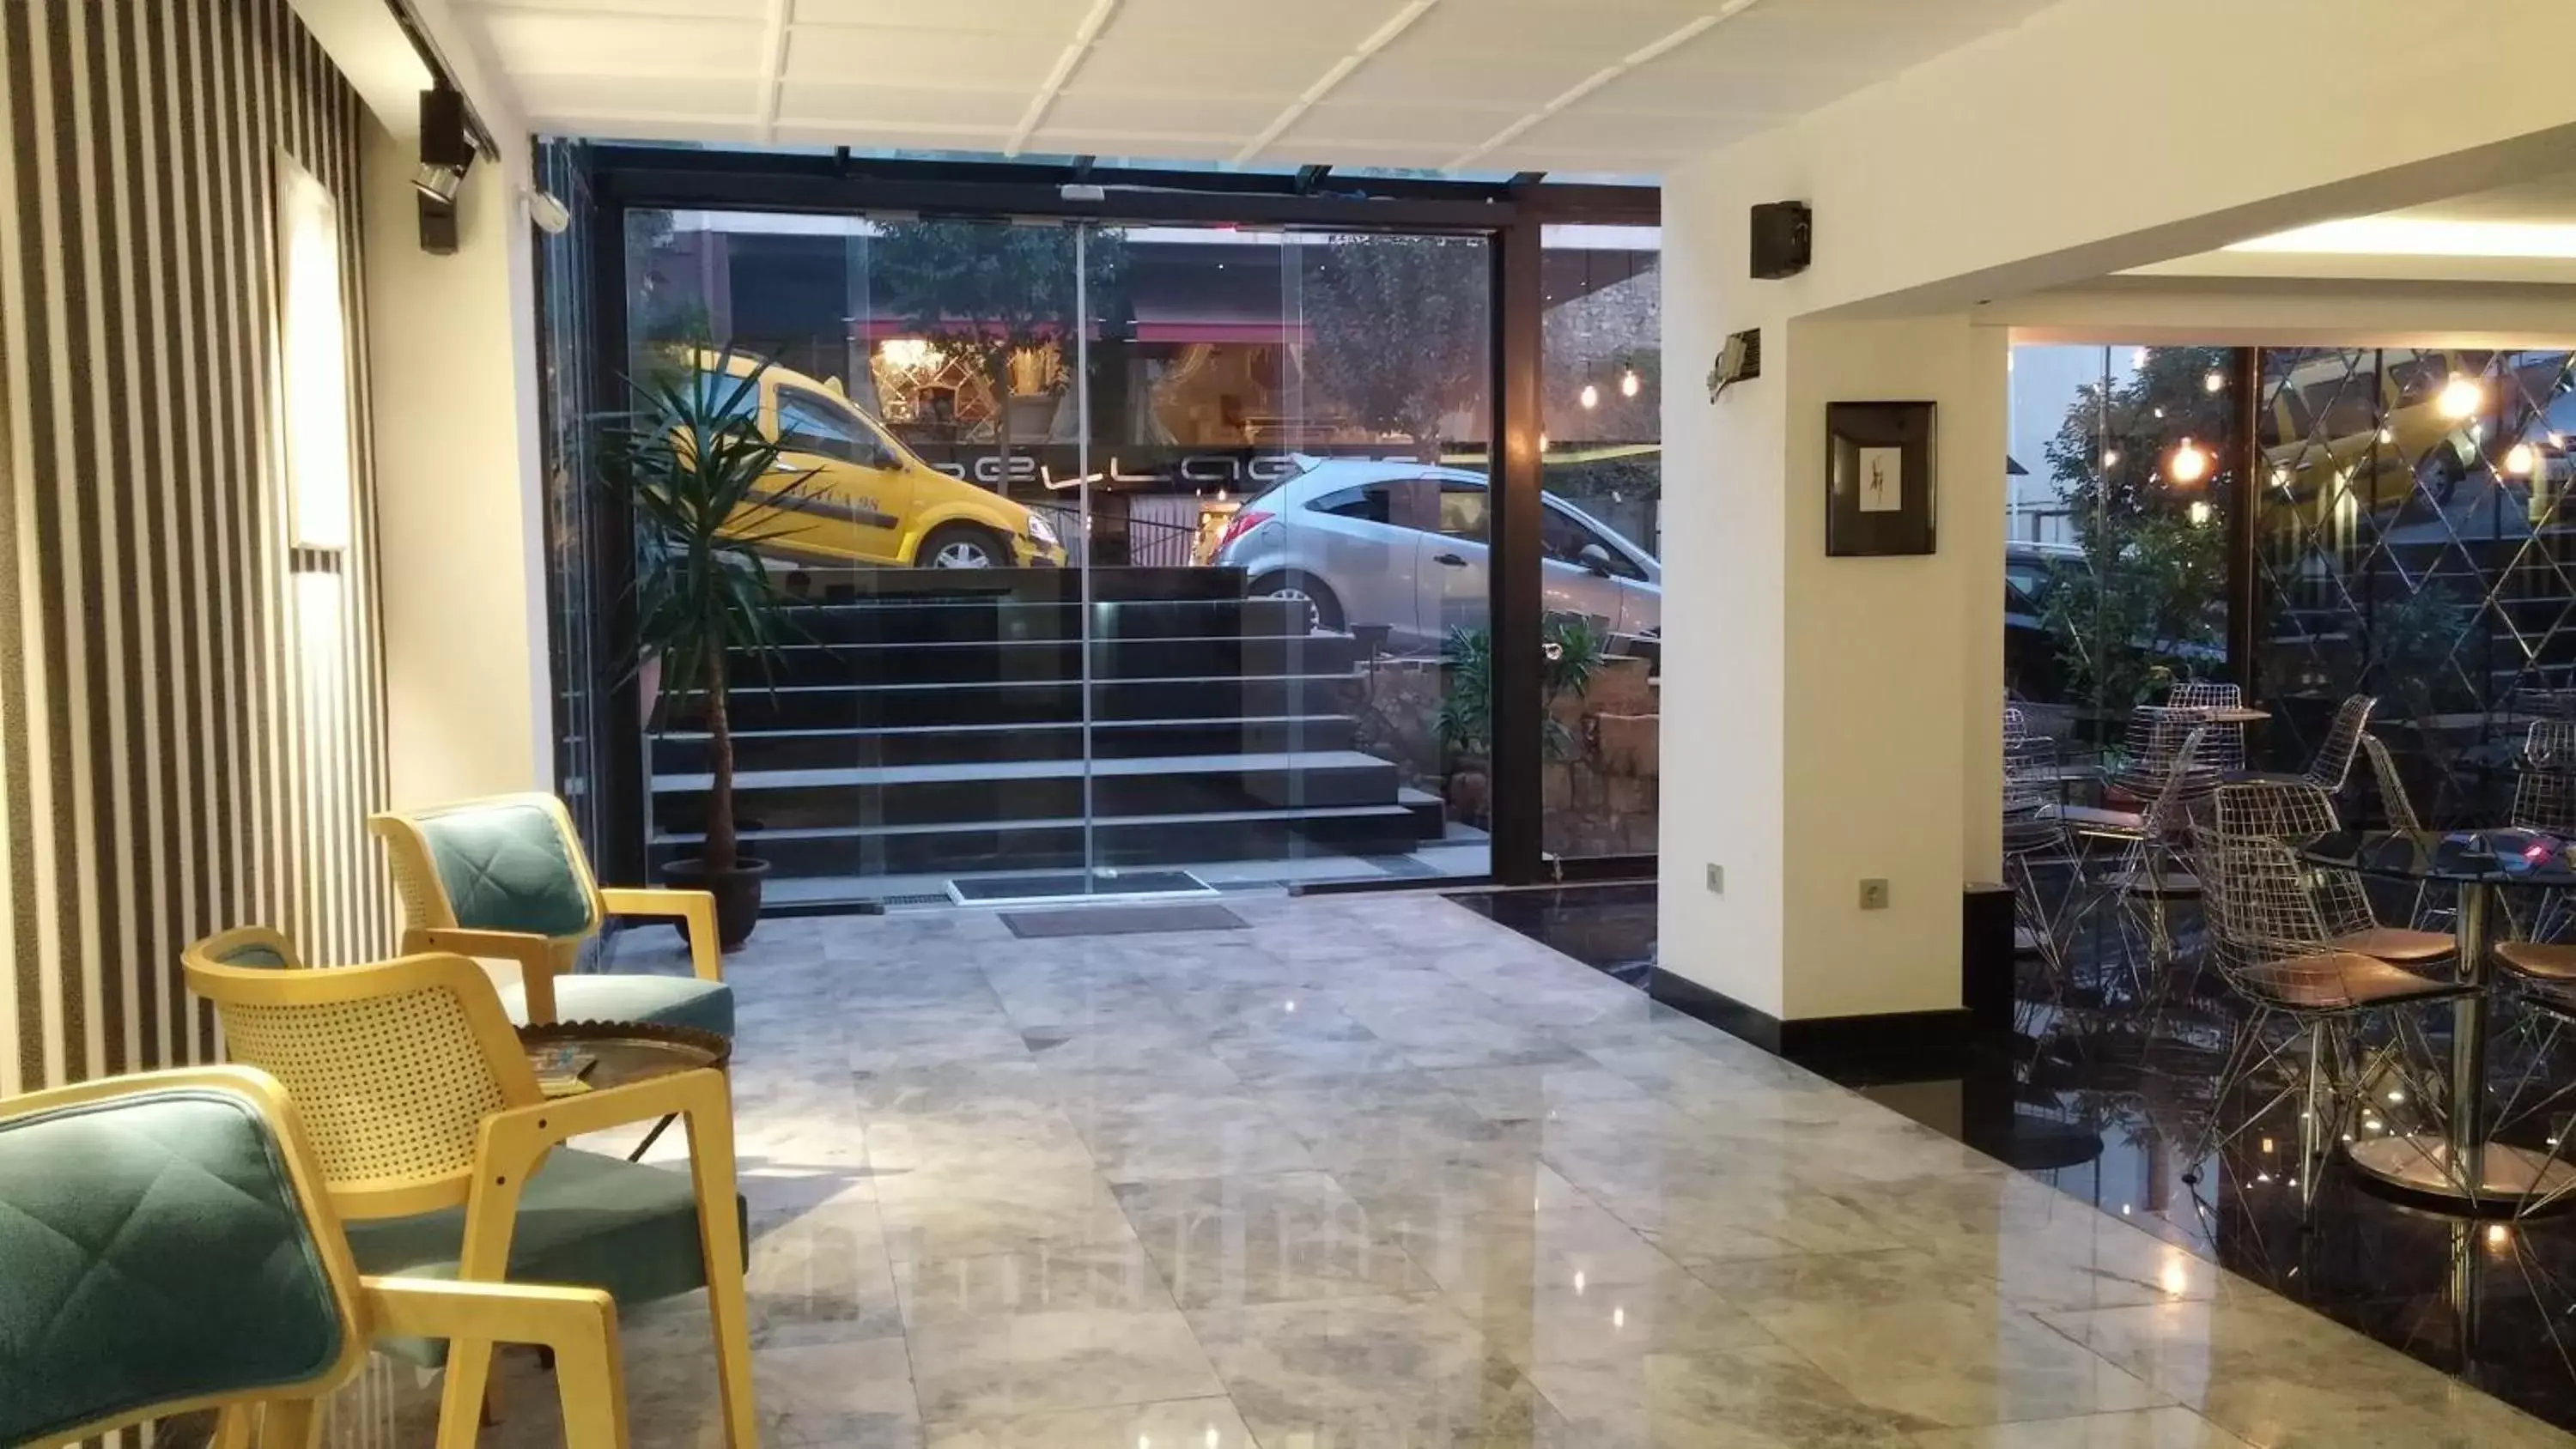 Lobby or reception, Lobby/Reception in Semsan Hotel